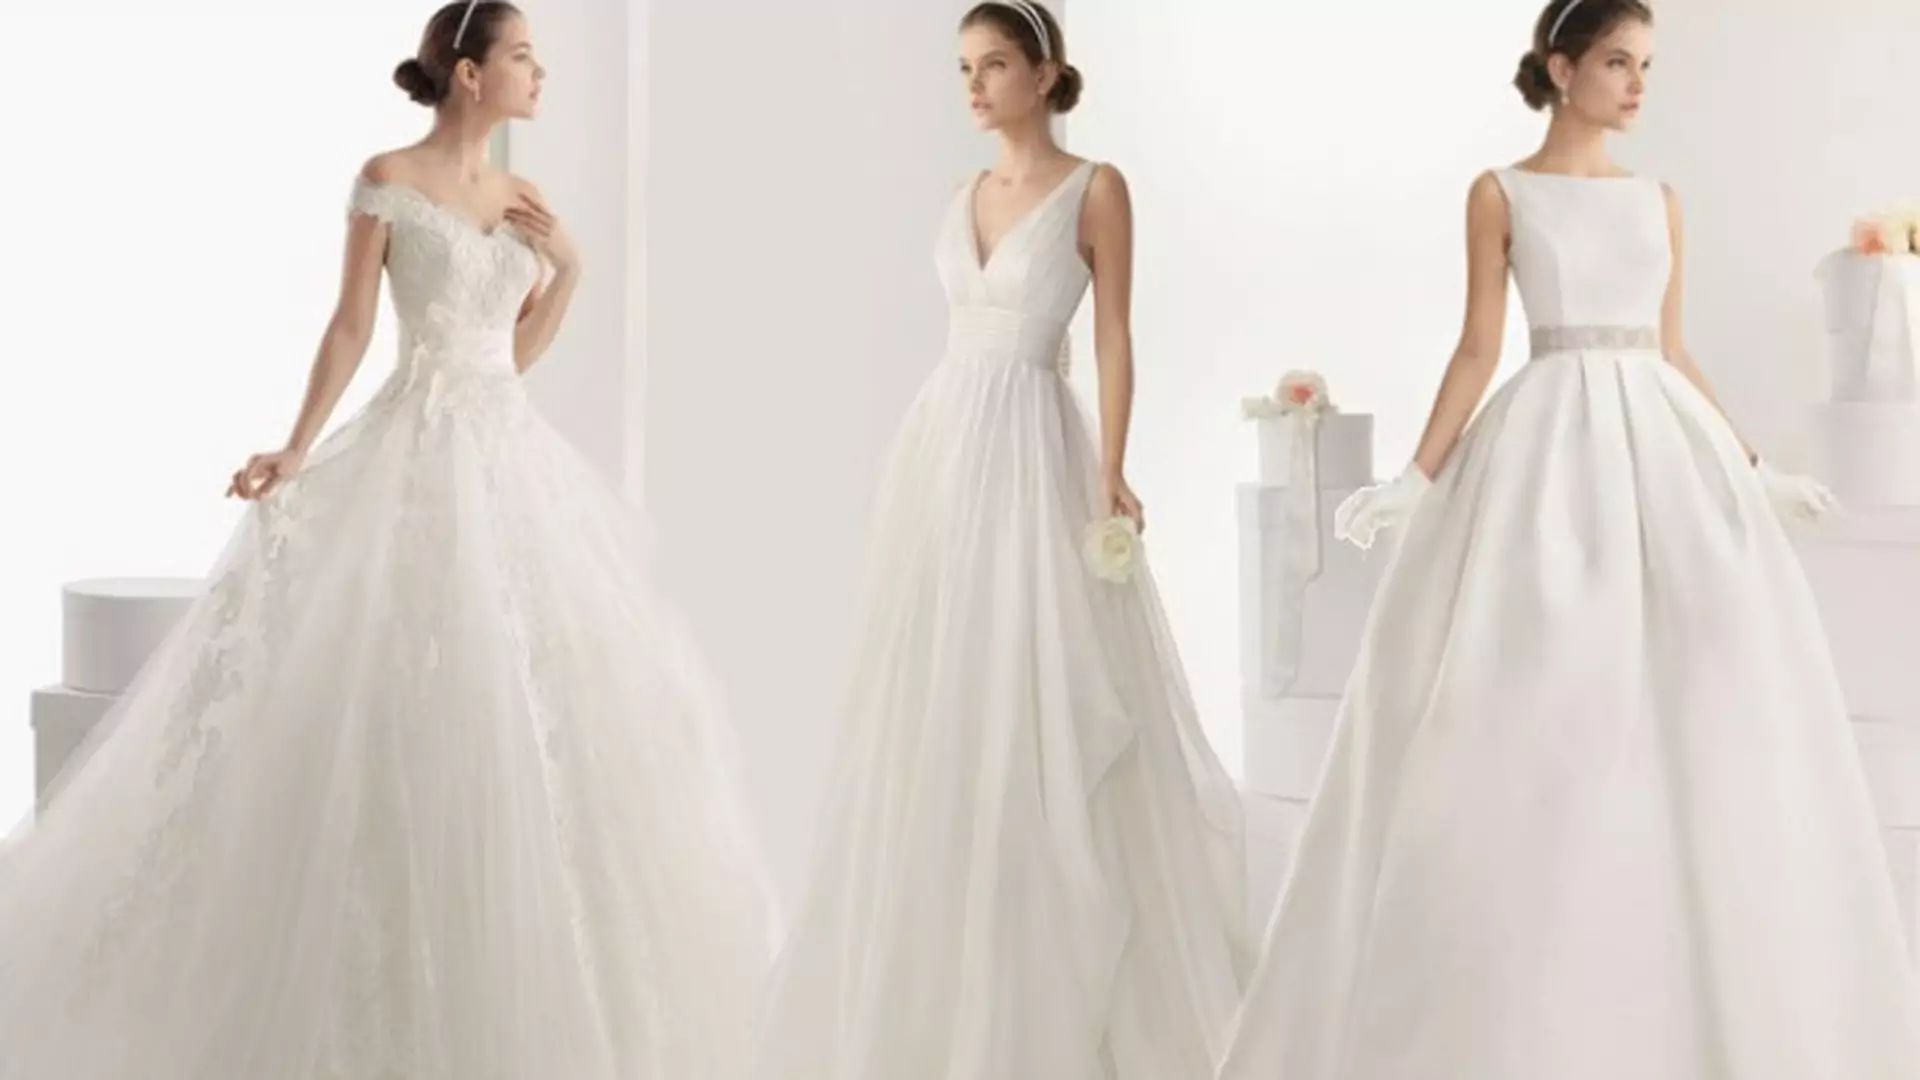 Piękne suknie ślubne 2014: wybrane modele